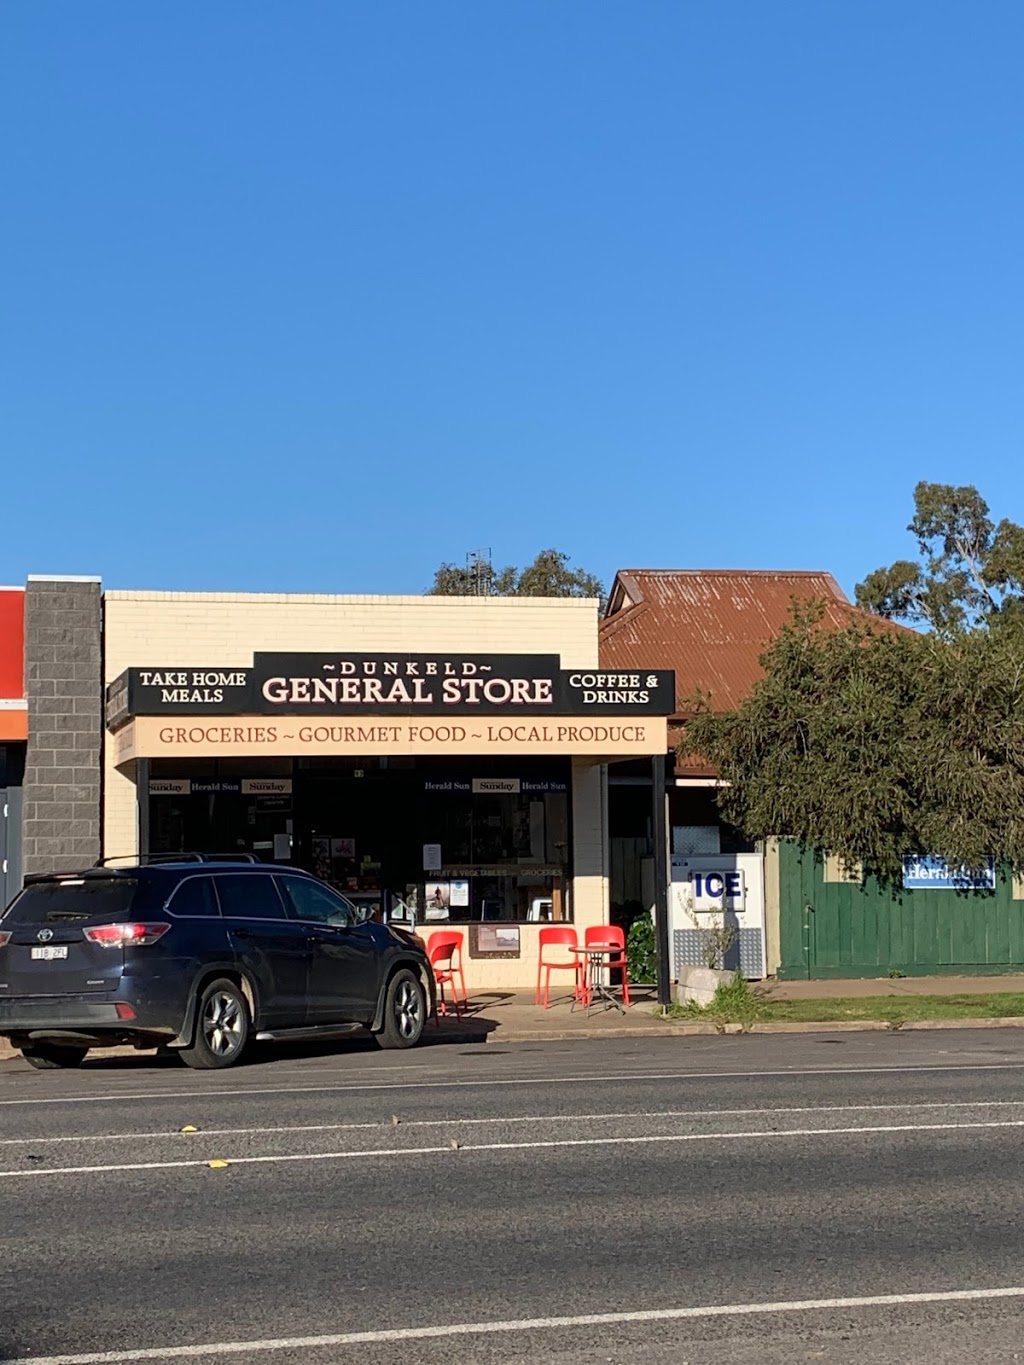 Dunkeld General Store | 93 Parker St, Dunkeld VIC 3294, Australia | Phone: (03) 5577 2418